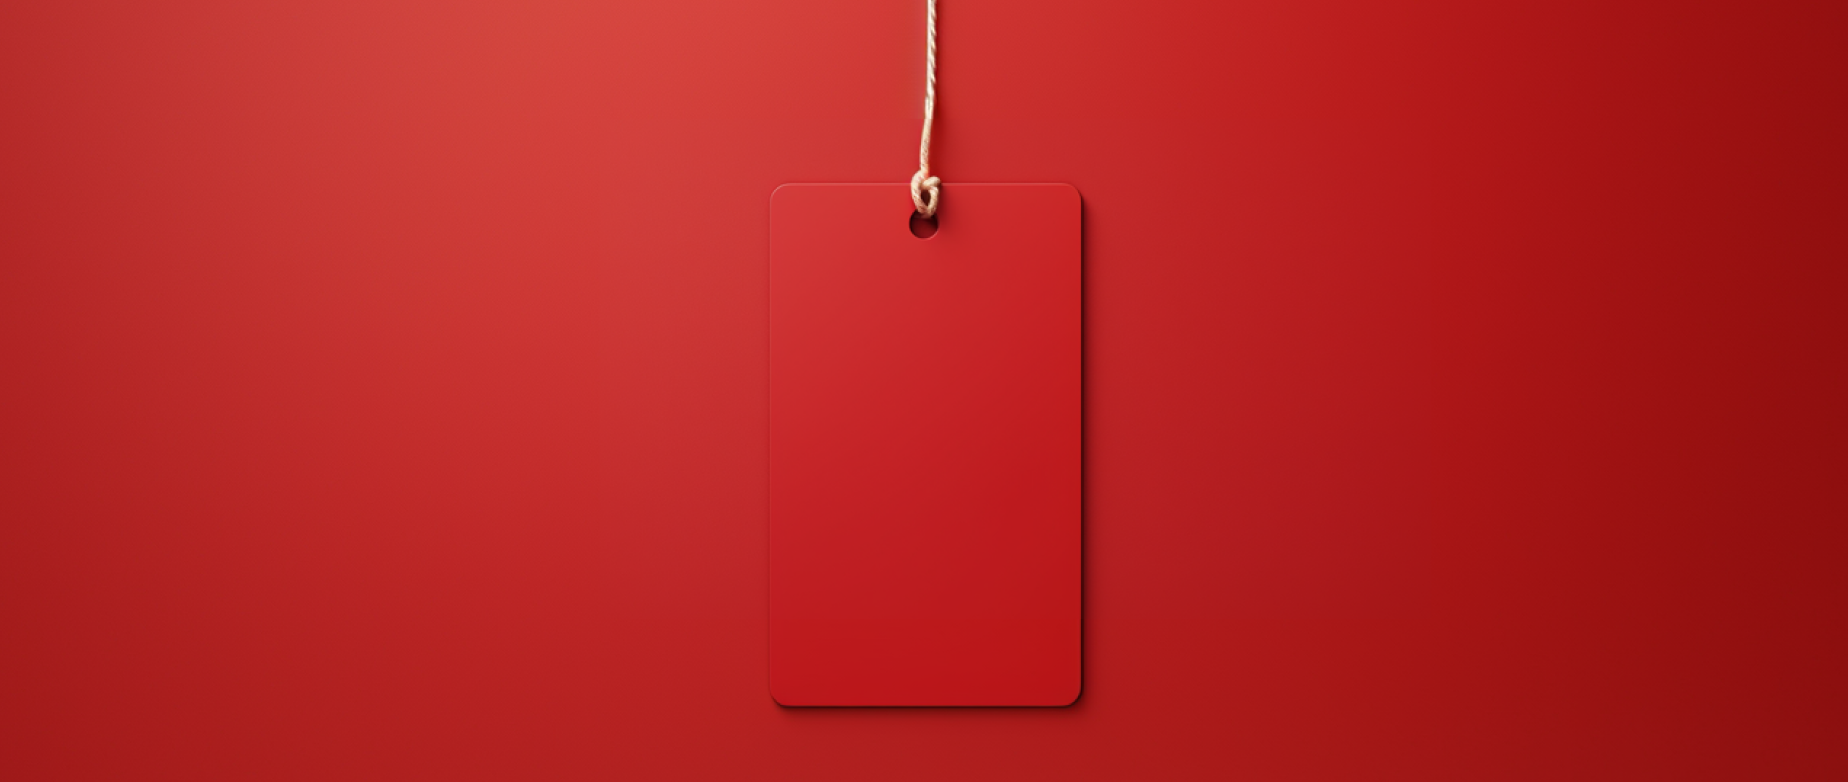 Une étiquette rouge vierge sur fond rouge, représentant des produits sous private label.